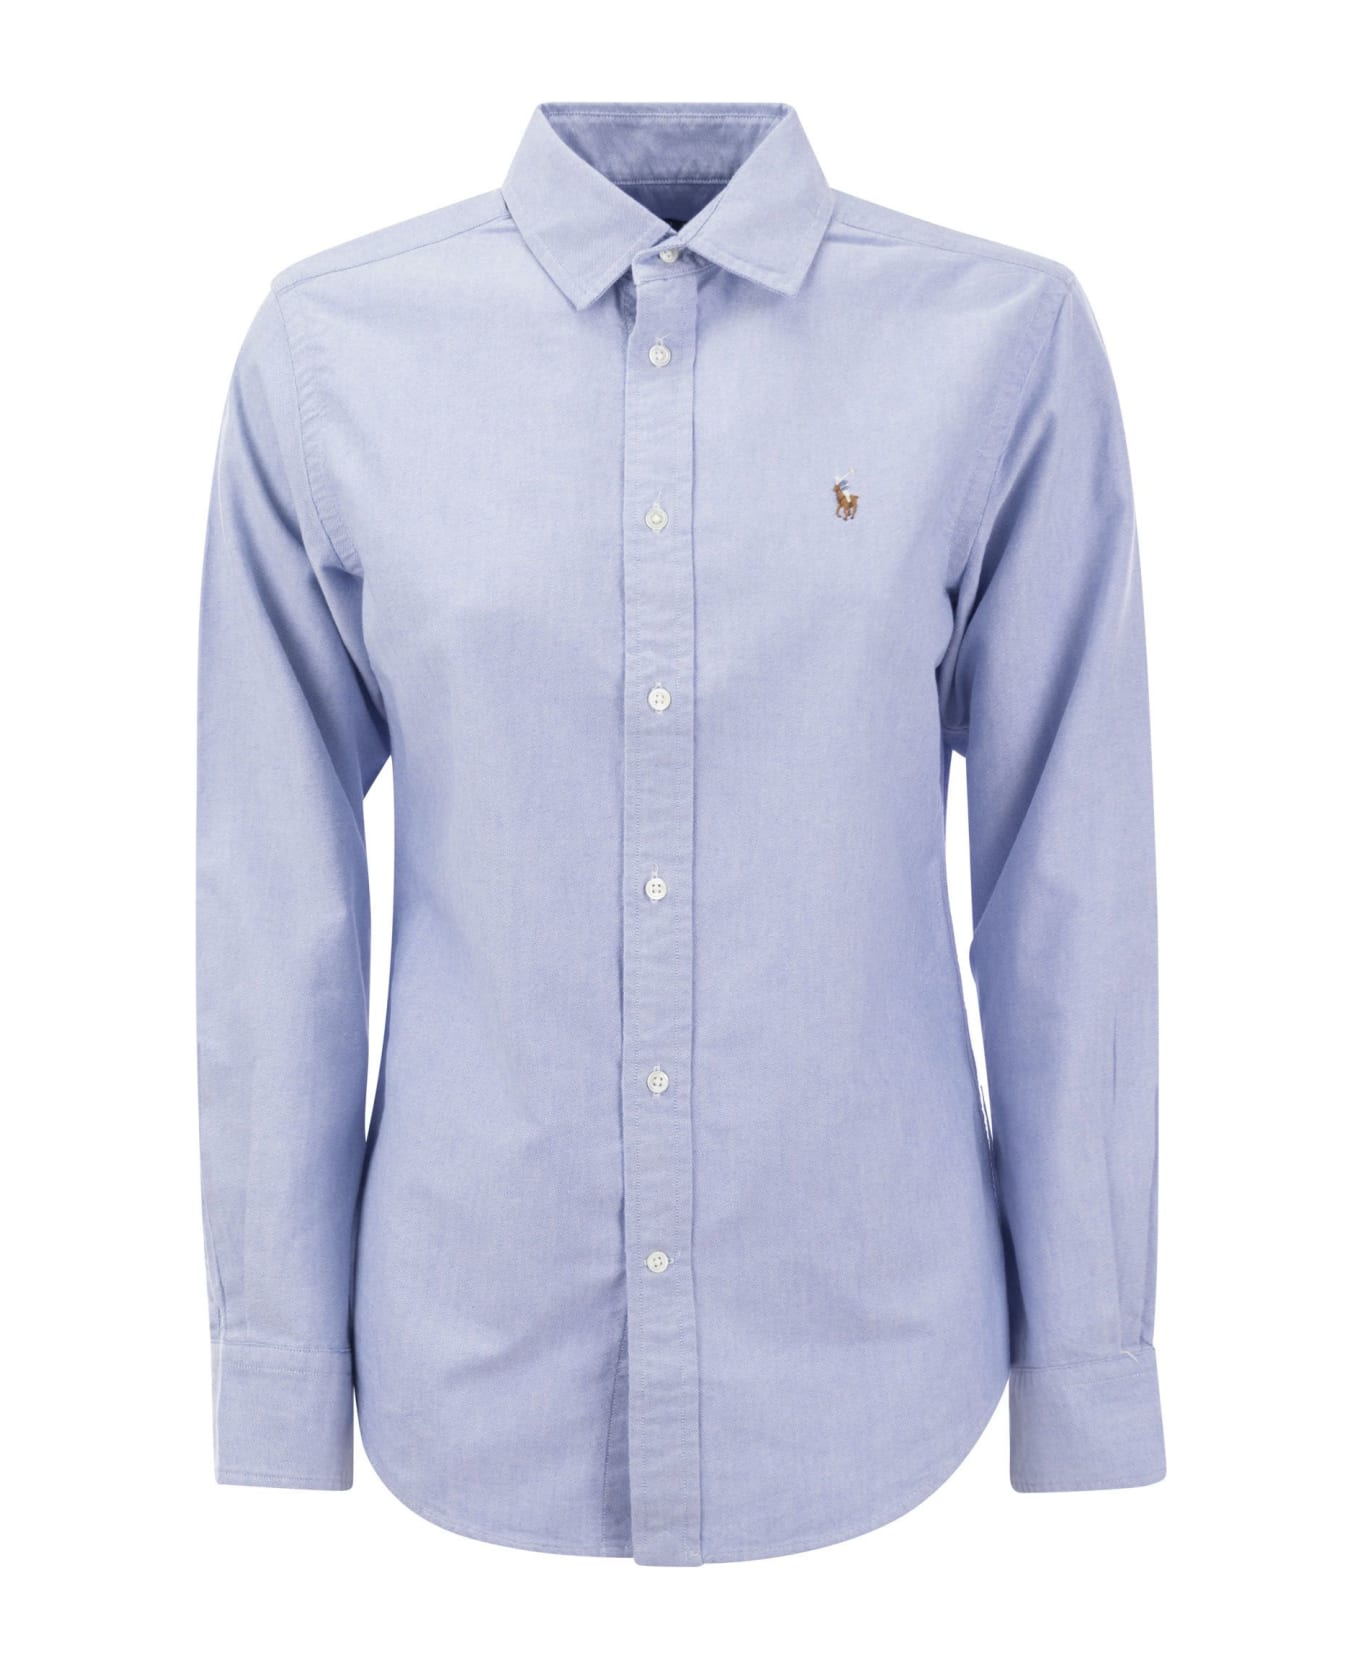 Polo Ralph Lauren Oxford Logo Shirt - Light Blue